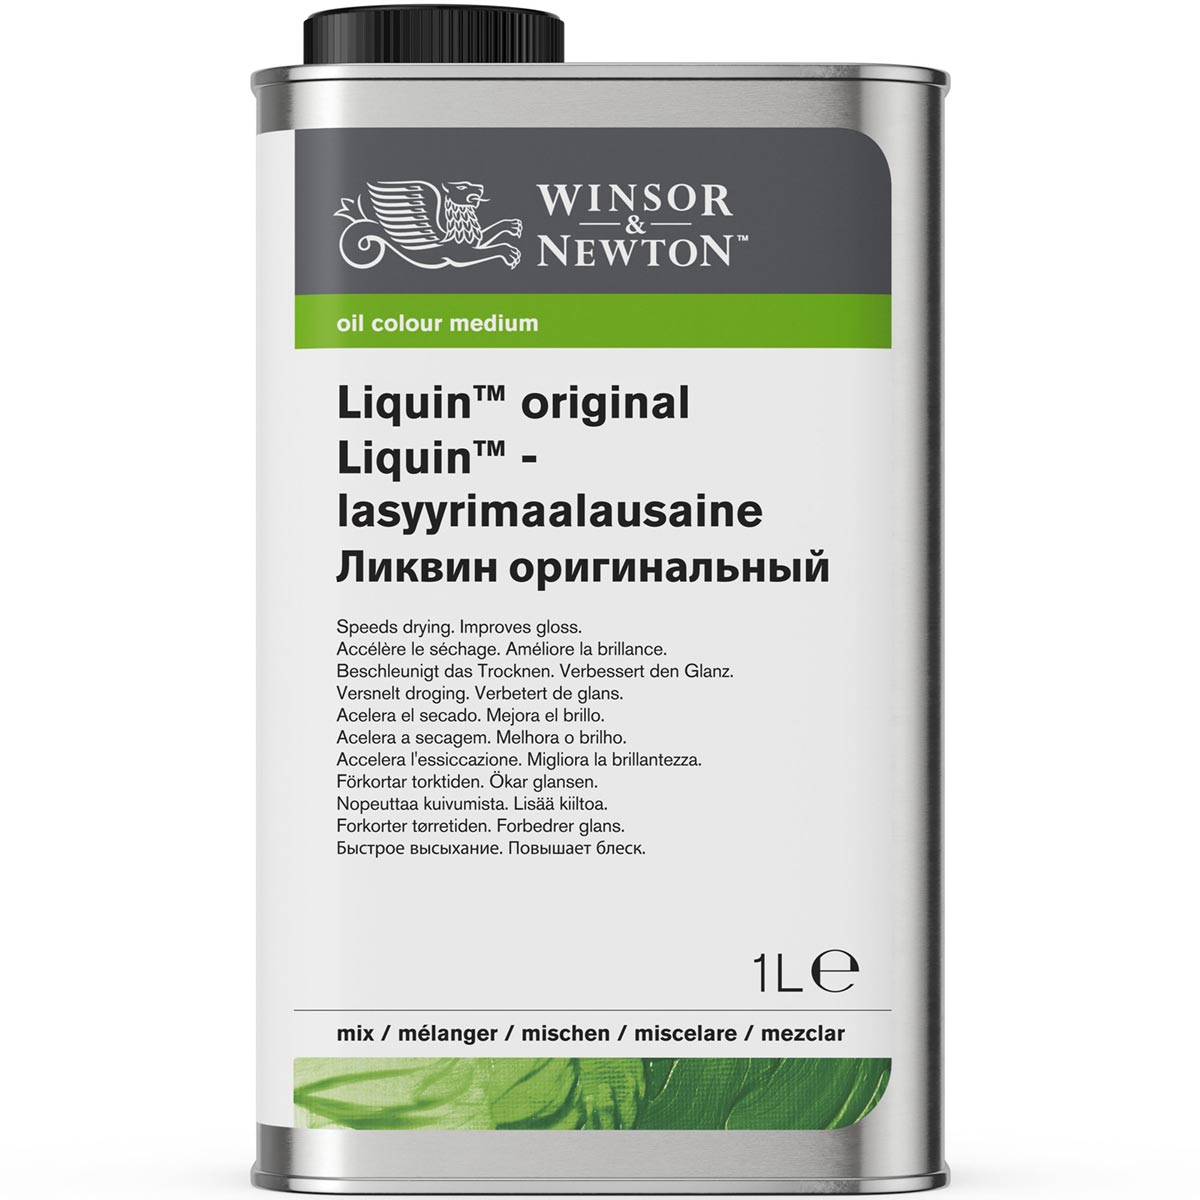 Winsor et Newton - Liquin Original - 1 litre